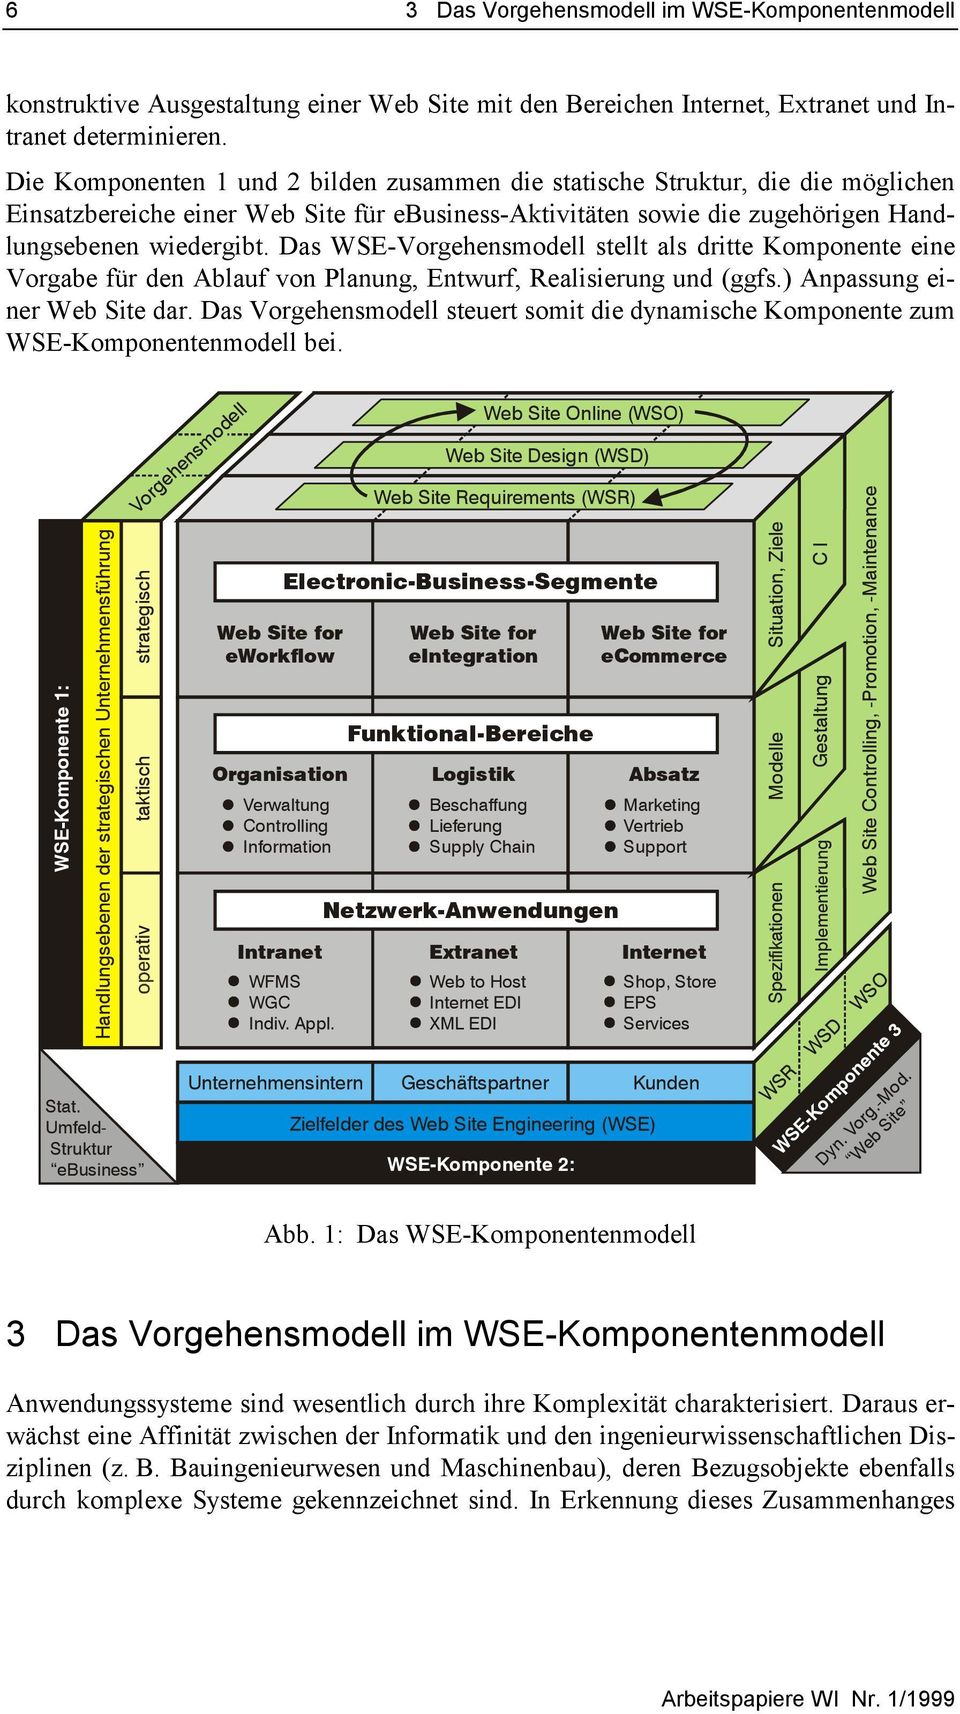 Das WSE-Vorgehensmodell stellt als dritte Komponente eine Vorgabe für den Ablauf von Planung, Entwurf, Realisierung und (ggfs.) Anpassung einer Web Site dar.